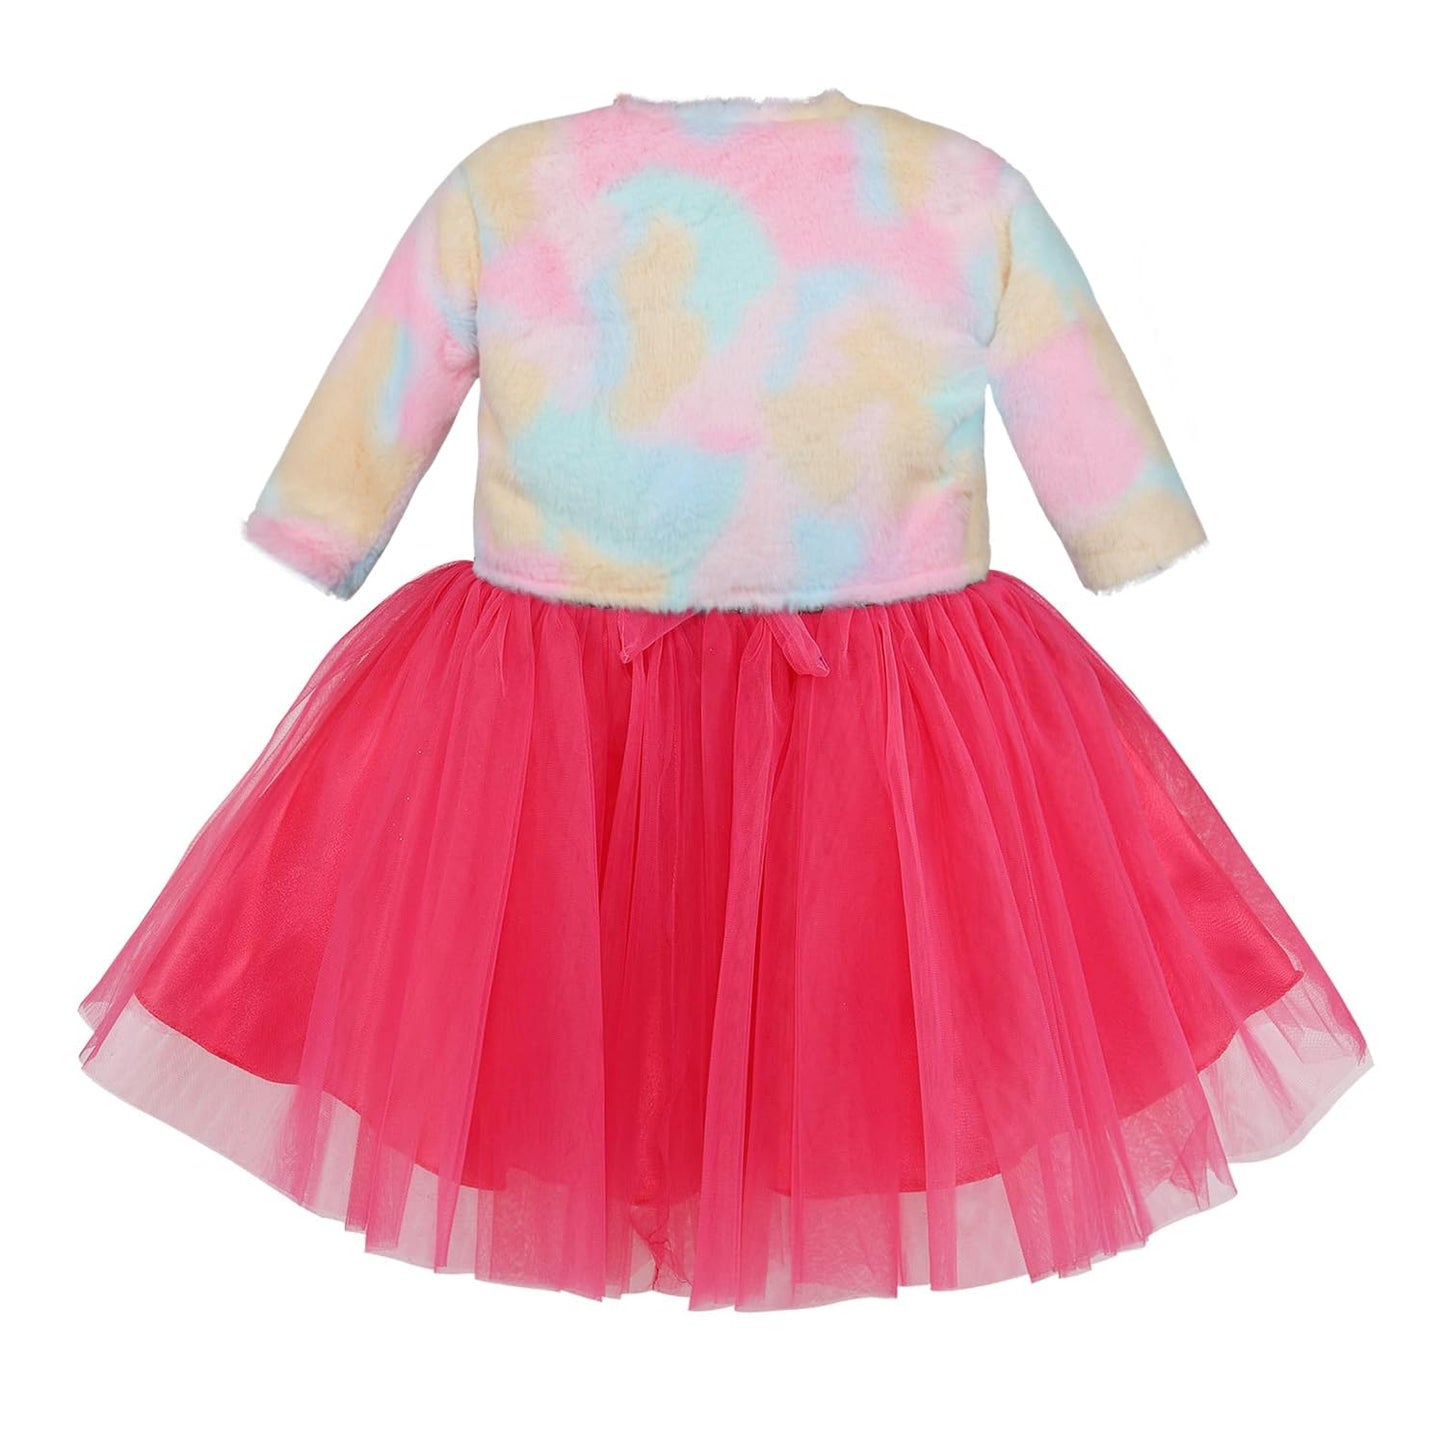 Wish Karo baby girls partywear frocks dress for girls fe3132bwnJKTMLTF